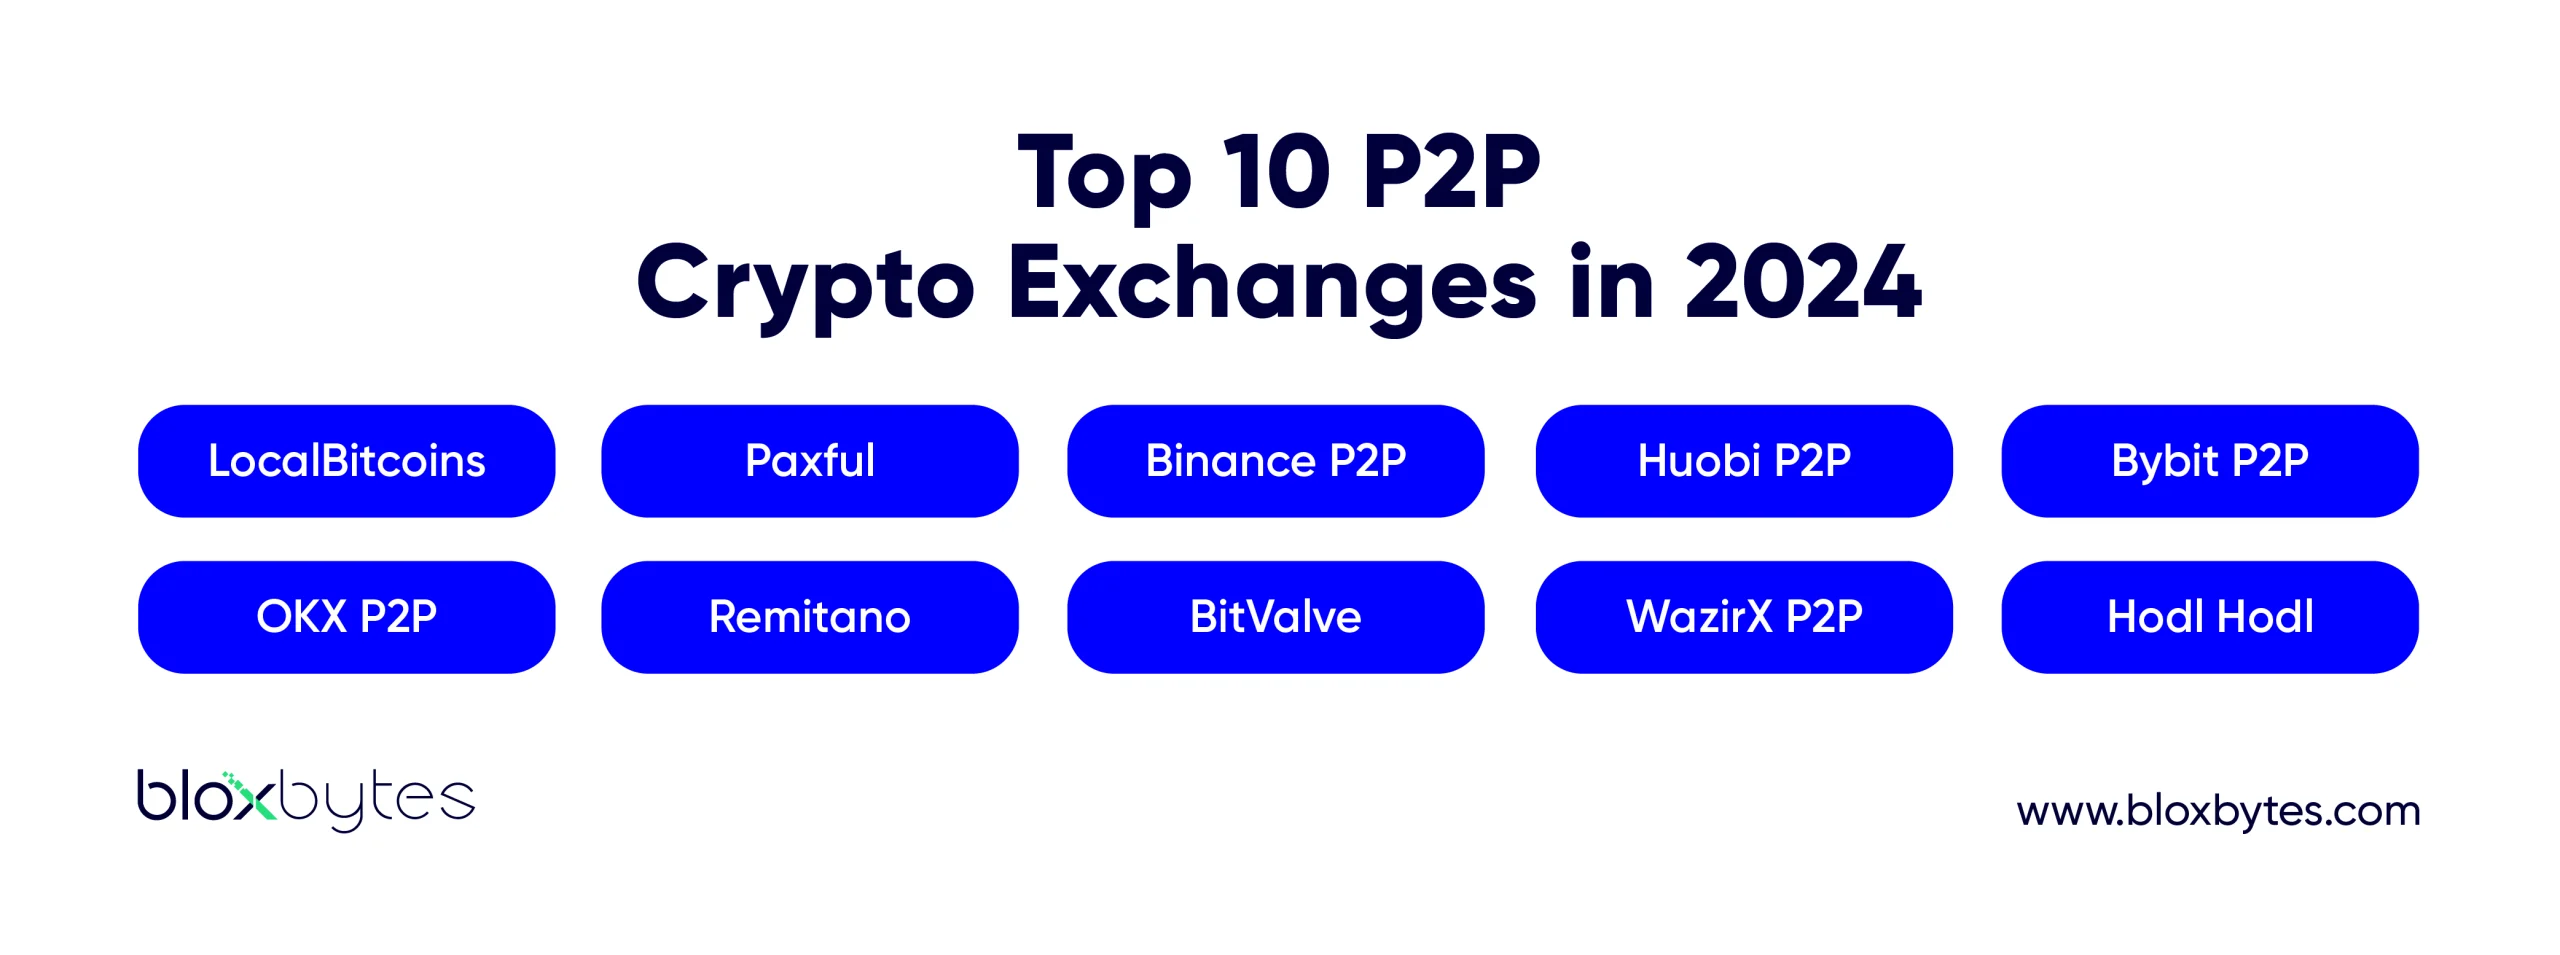 P2P Crypto Exchanges